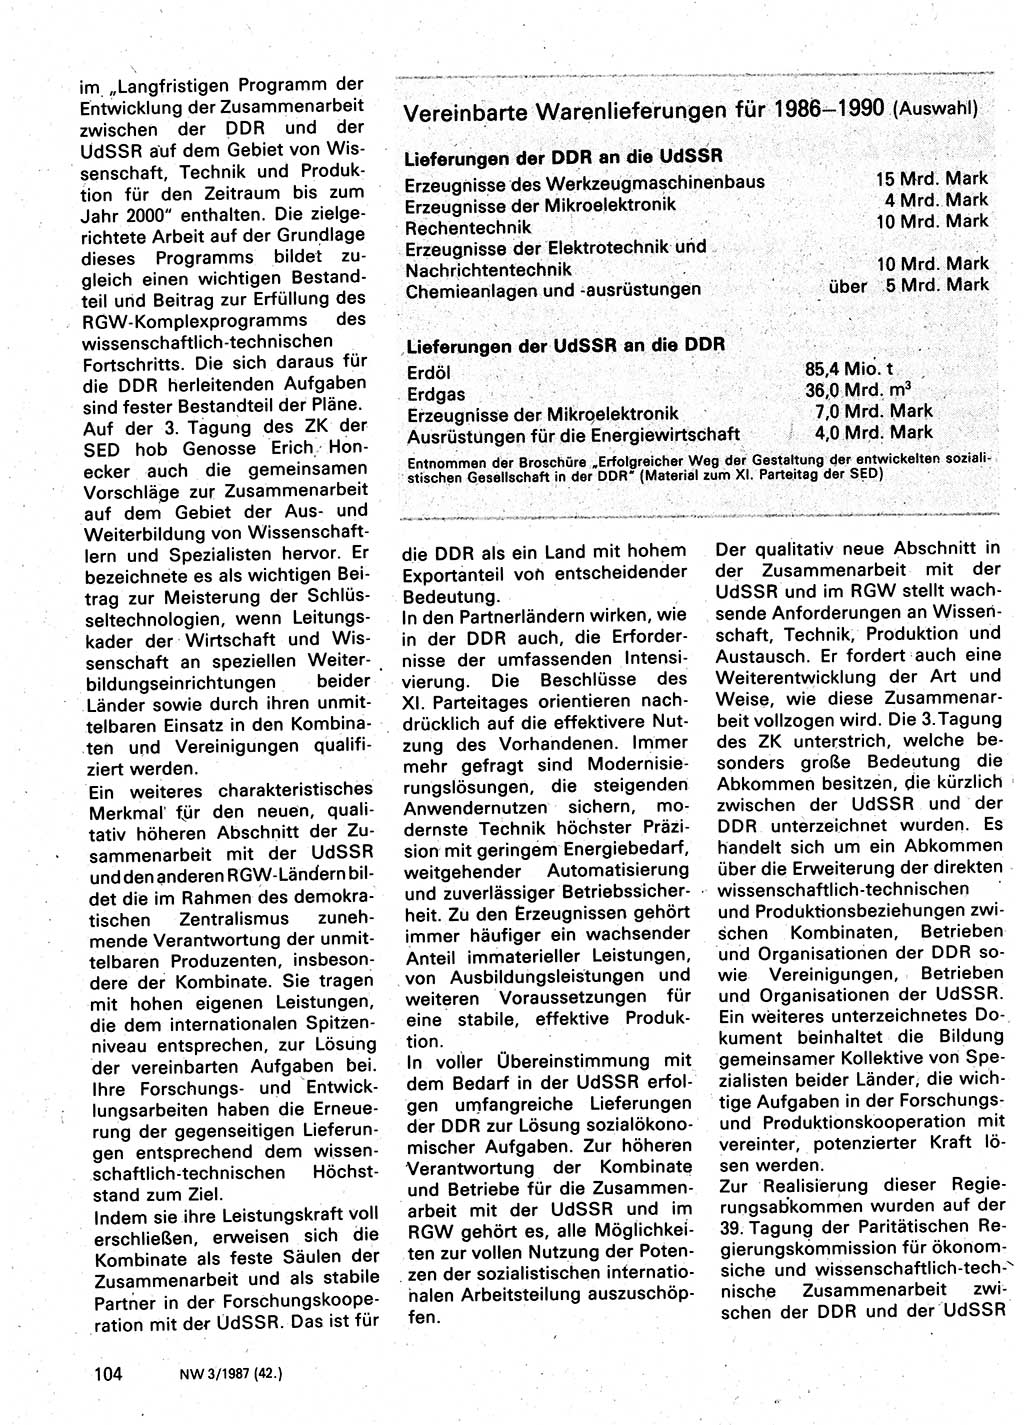 Neuer Weg (NW), Organ des Zentralkomitees (ZK) der SED (Sozialistische Einheitspartei Deutschlands) für Fragen des Parteilebens, 42. Jahrgang [Deutsche Demokratische Republik (DDR)] 1987, Seite 104 (NW ZK SED DDR 1987, S. 104)